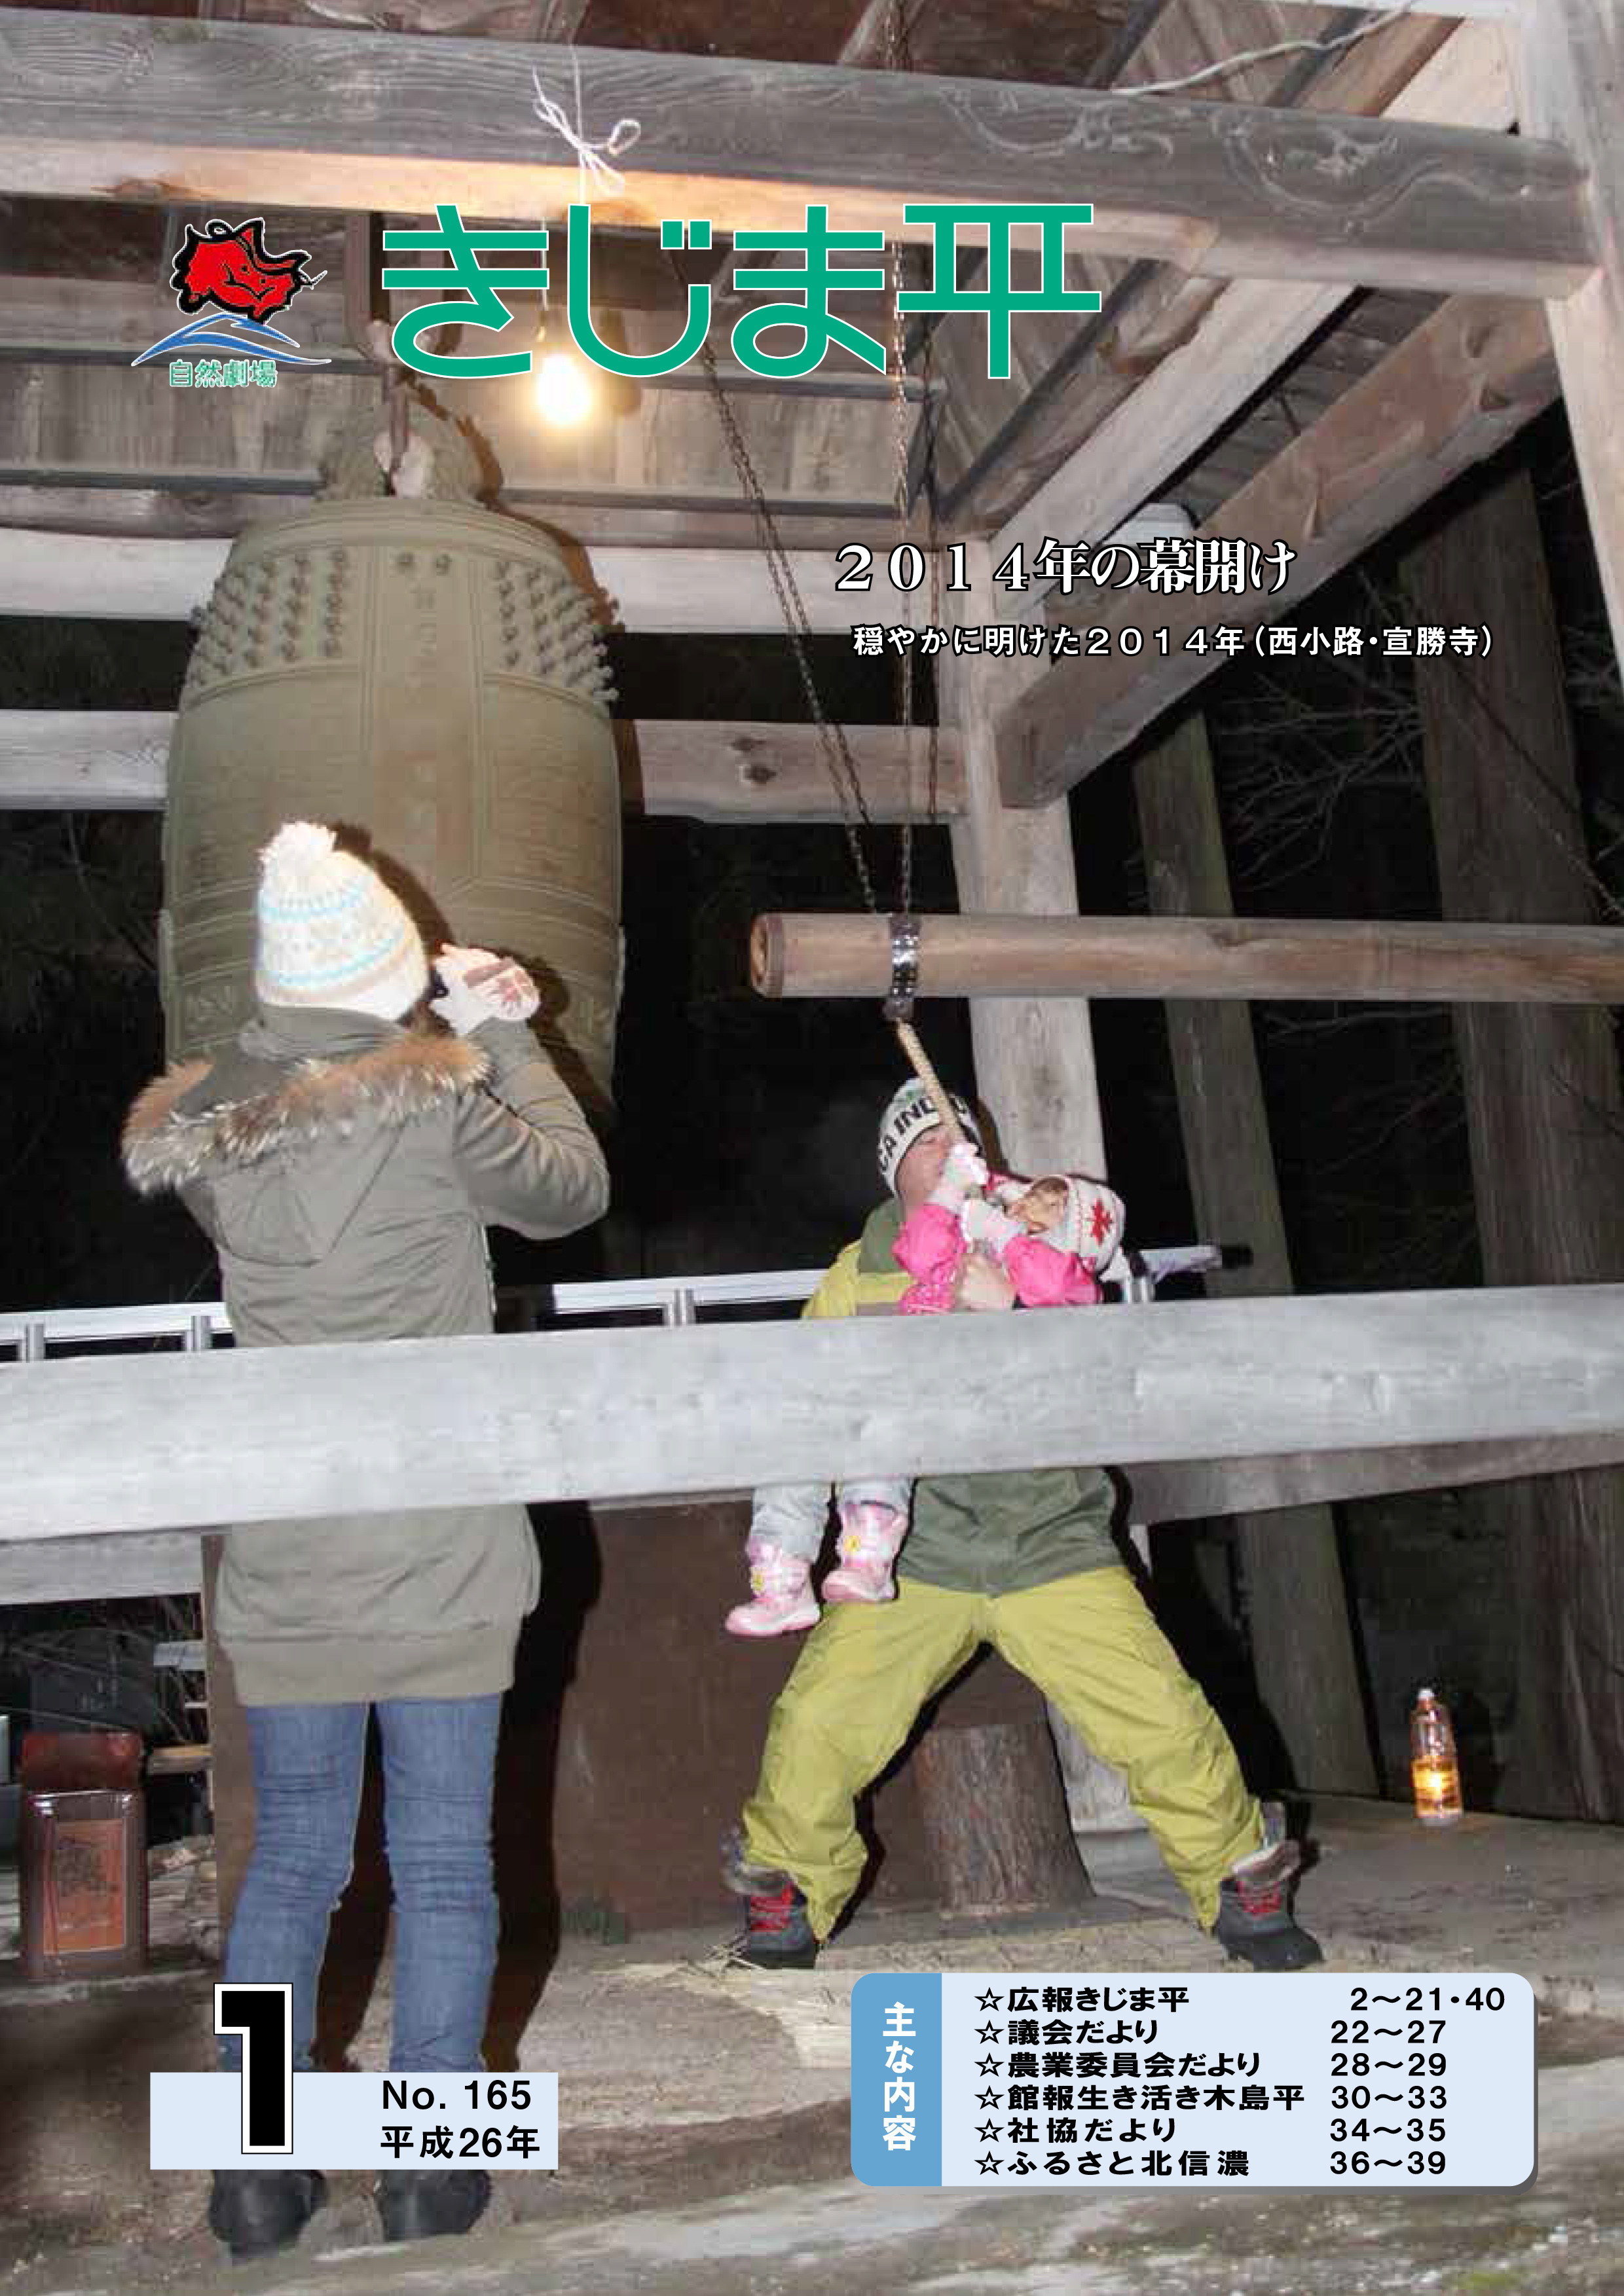 2014年の幕開けで西小路・宣勝寺で鐘を鳴らす親子の様子